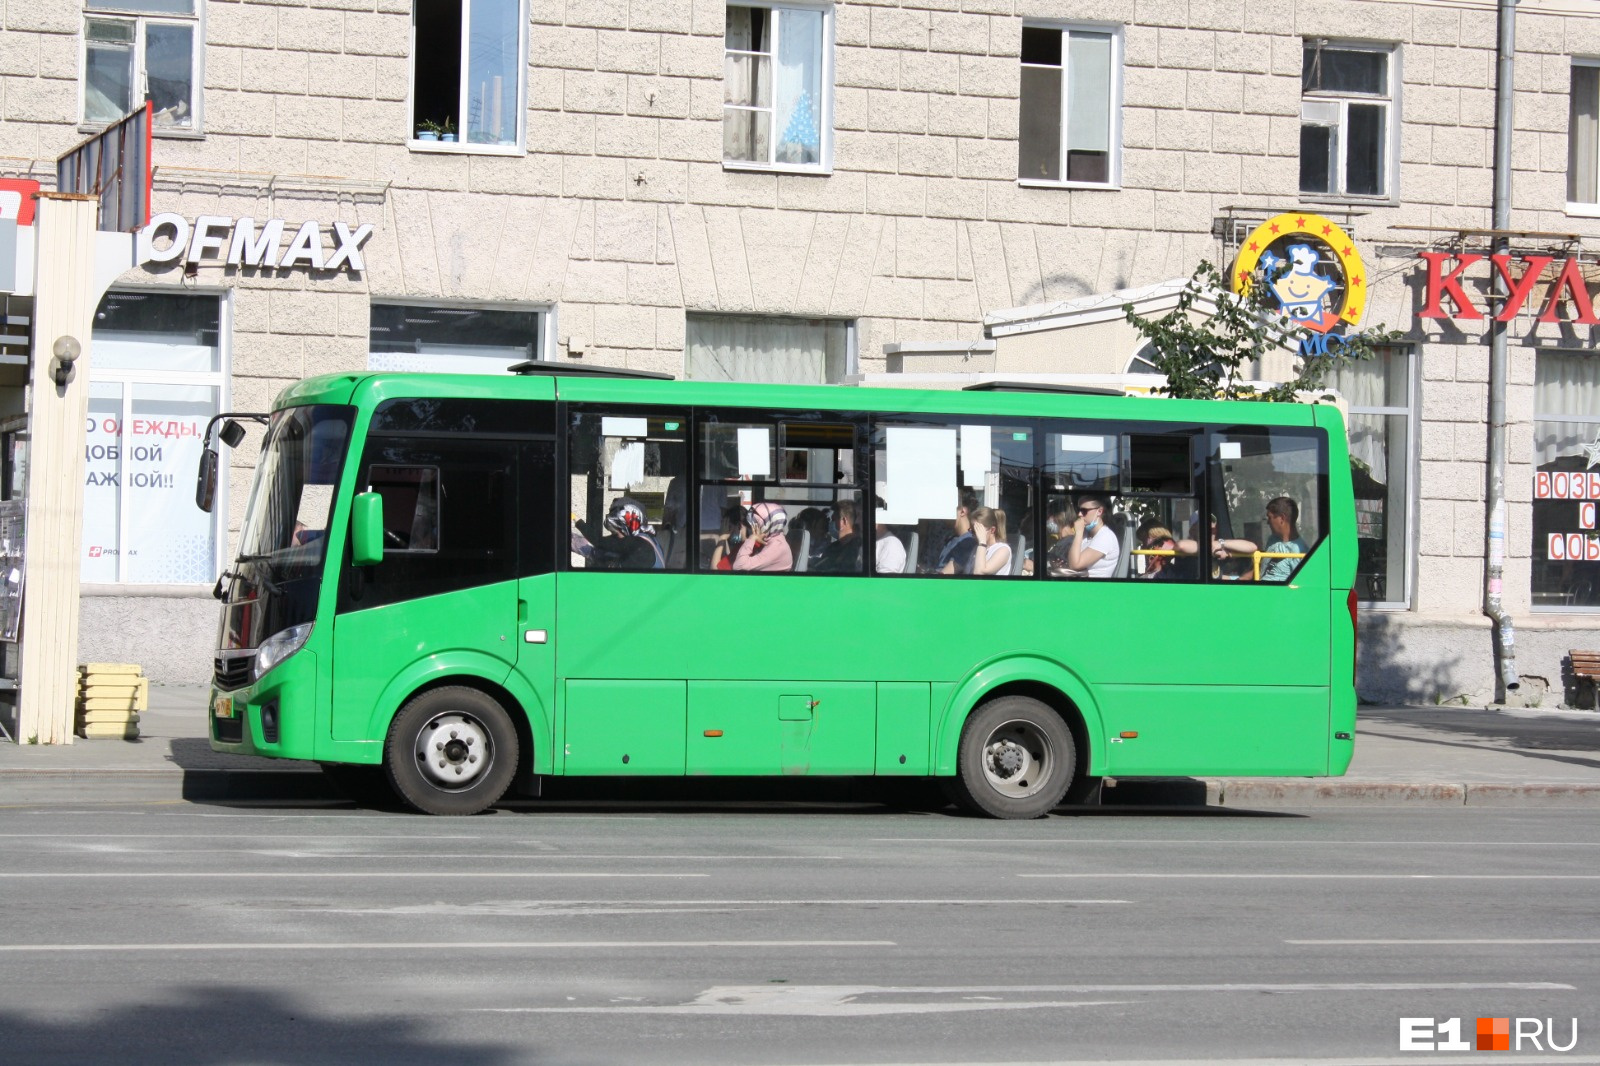 Жители Уралмаша пожаловались на автобус-призрак. Иногда на линии нет ни одной машины